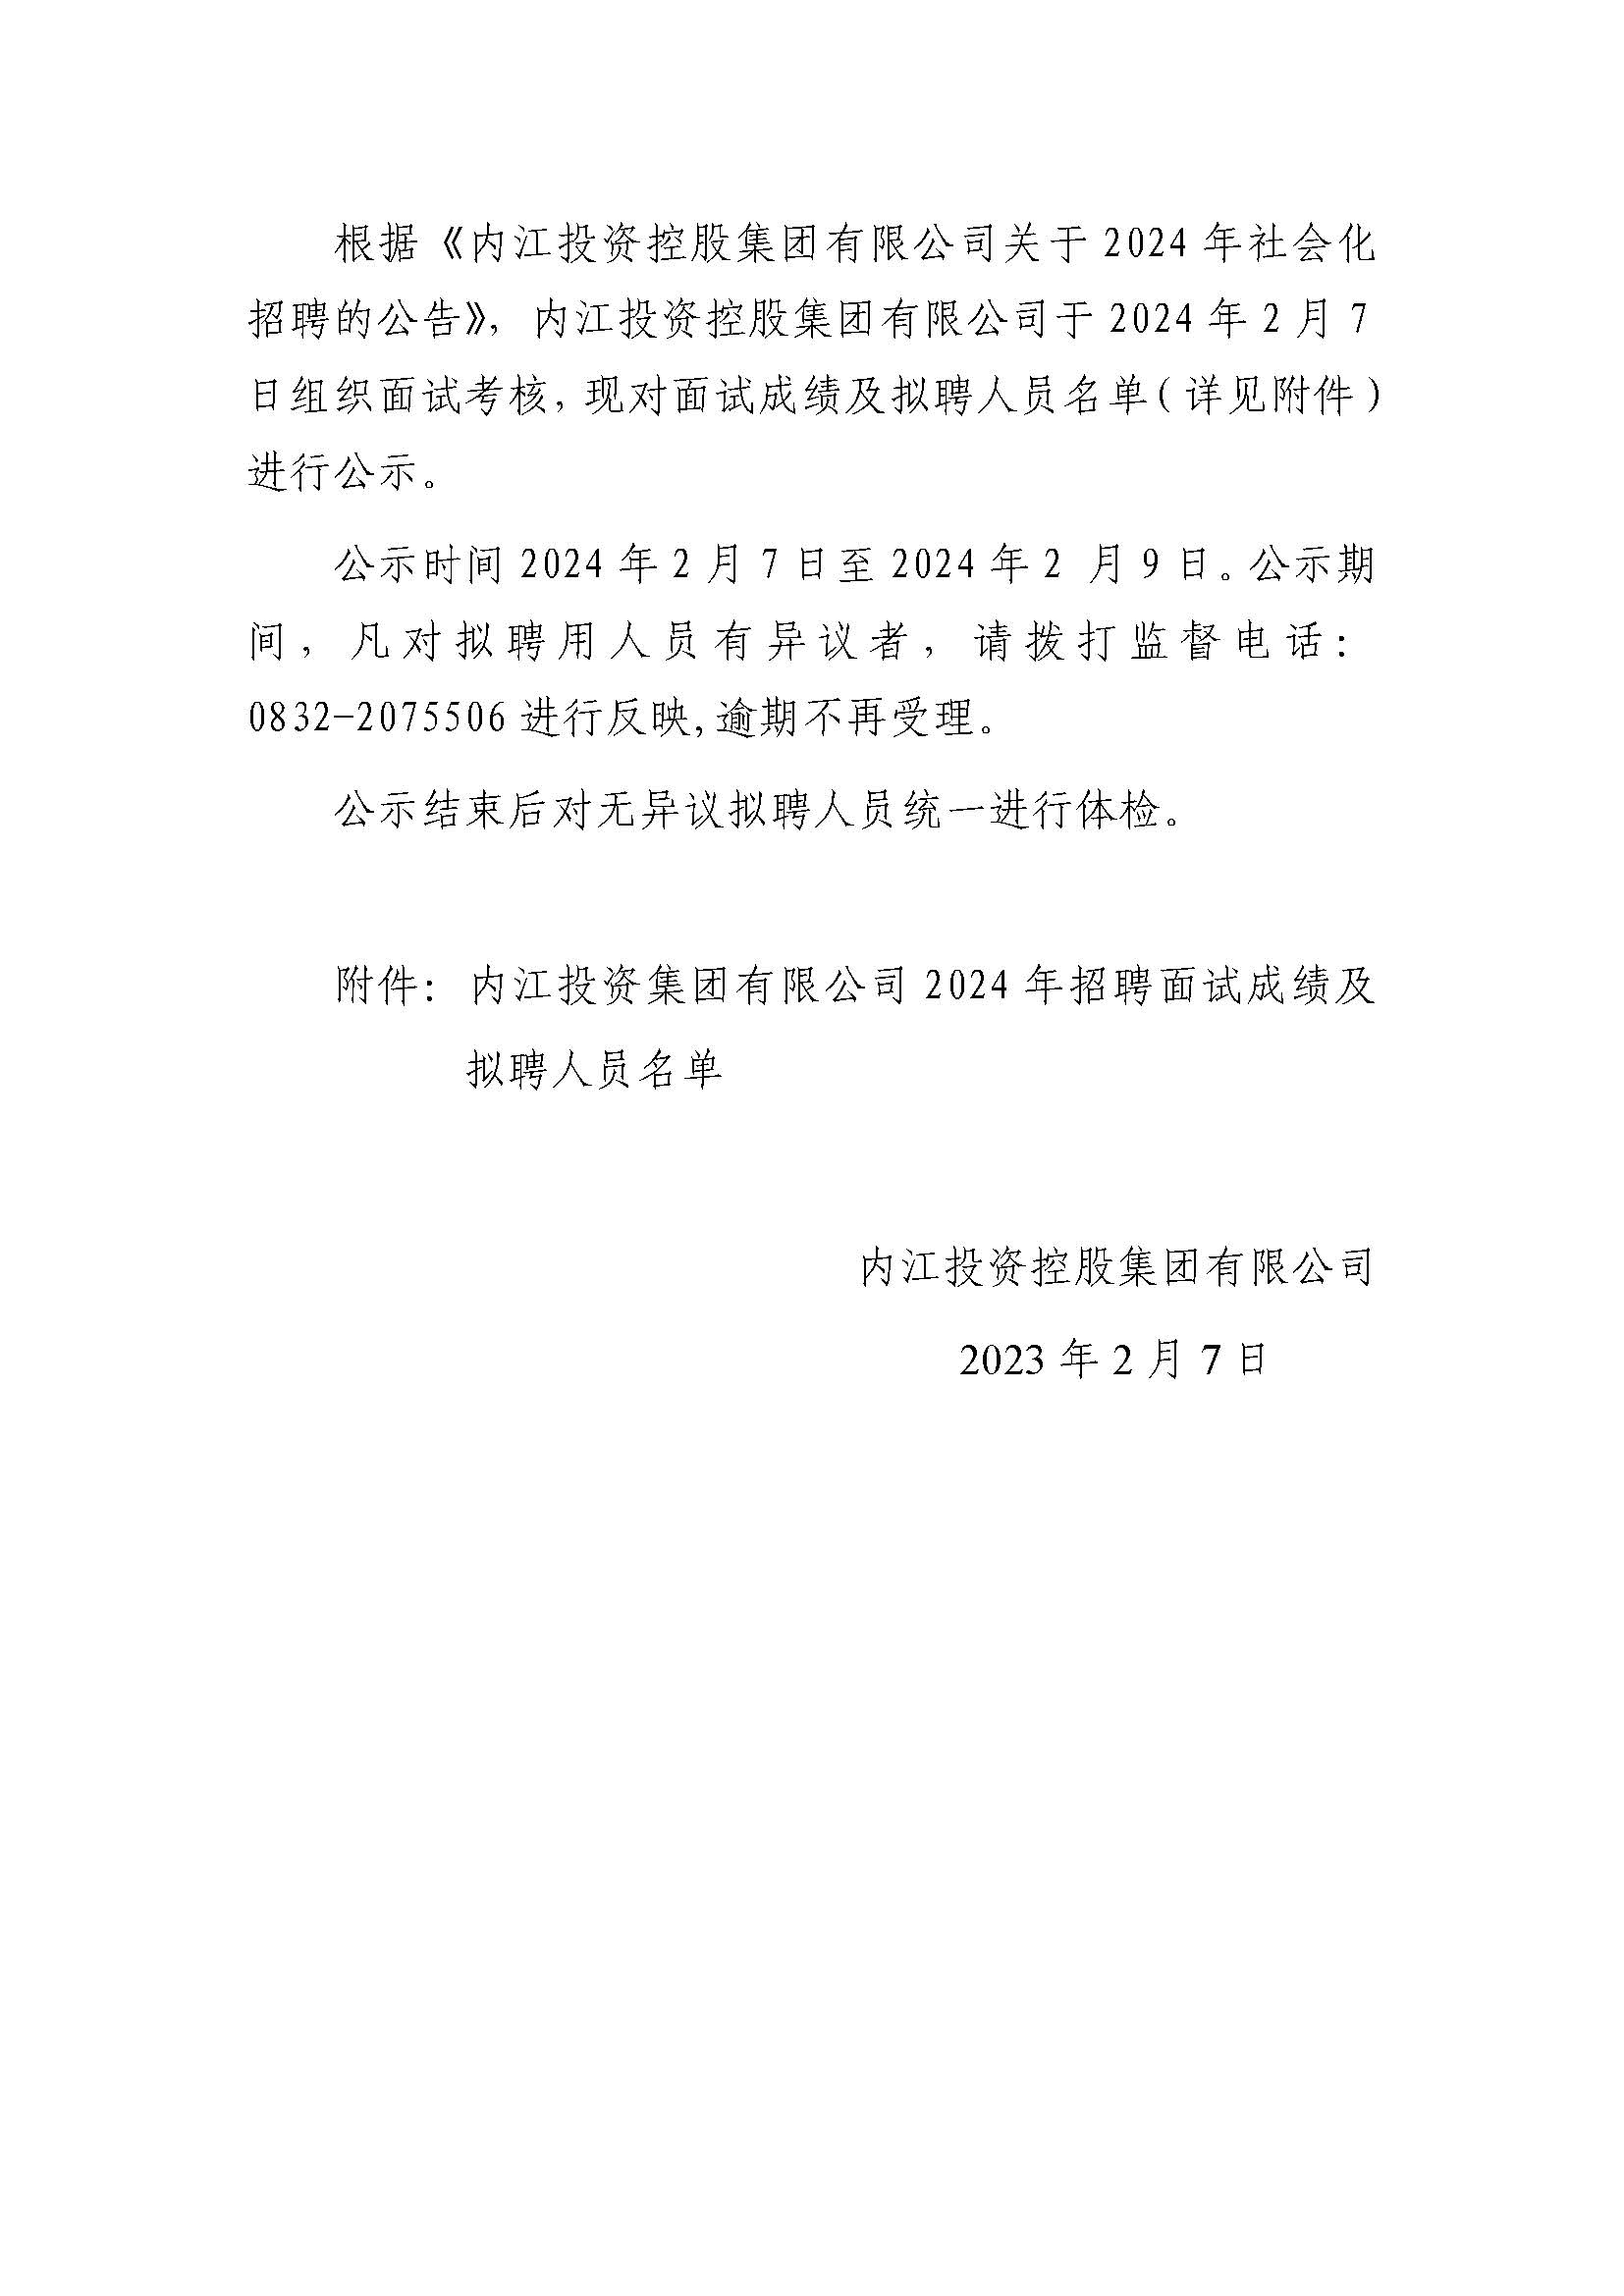 内江投资控股集团有限公司2024年社会化招聘面试结果及拟聘人员的公示